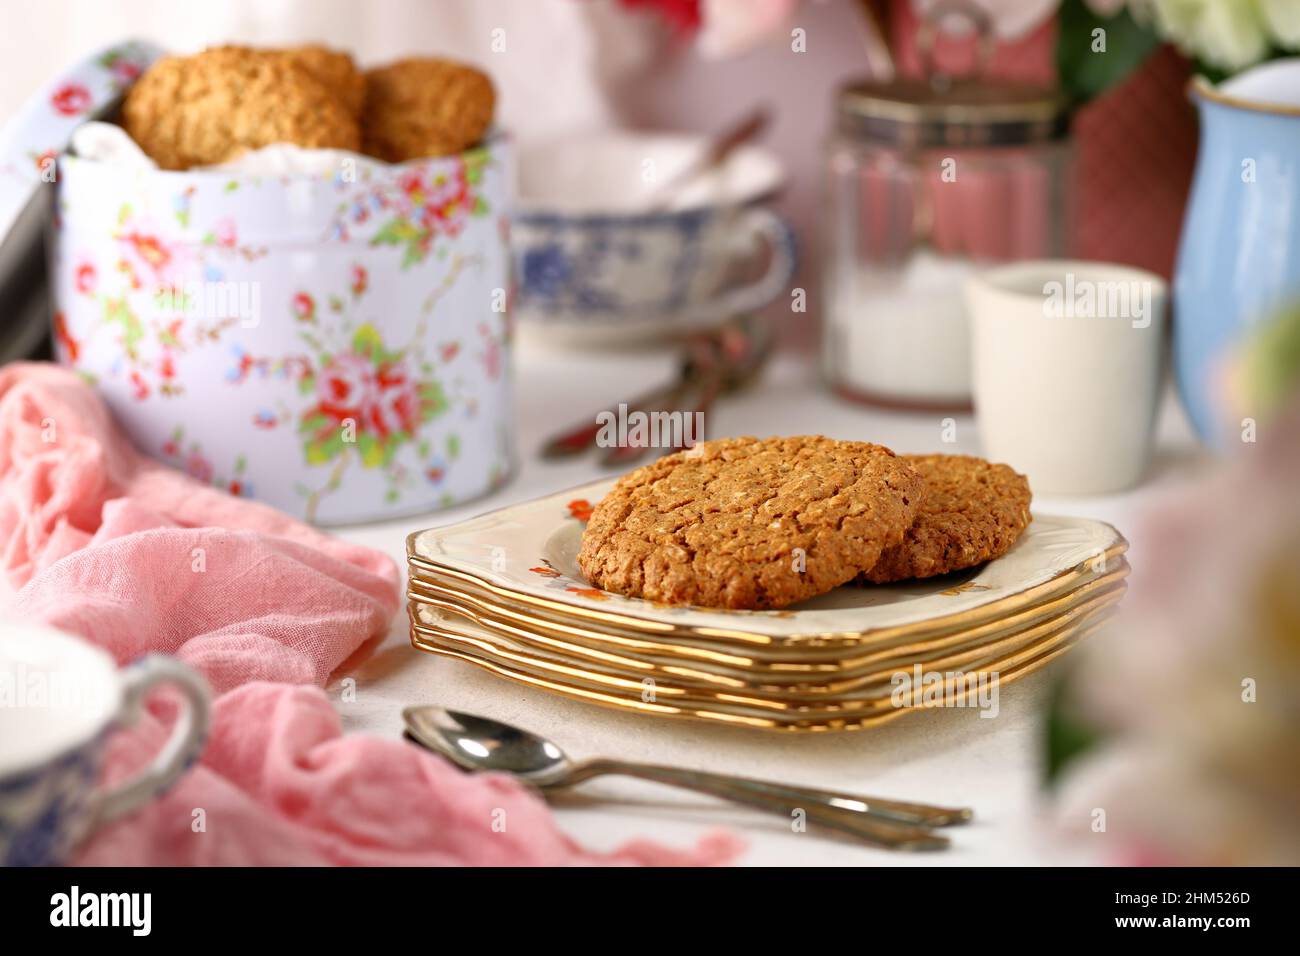 Juego de mesa con vajilla vintage para el tradicional té inglés de la tarde con una lata de galletas y galletas caseras en un plato Foto de stock